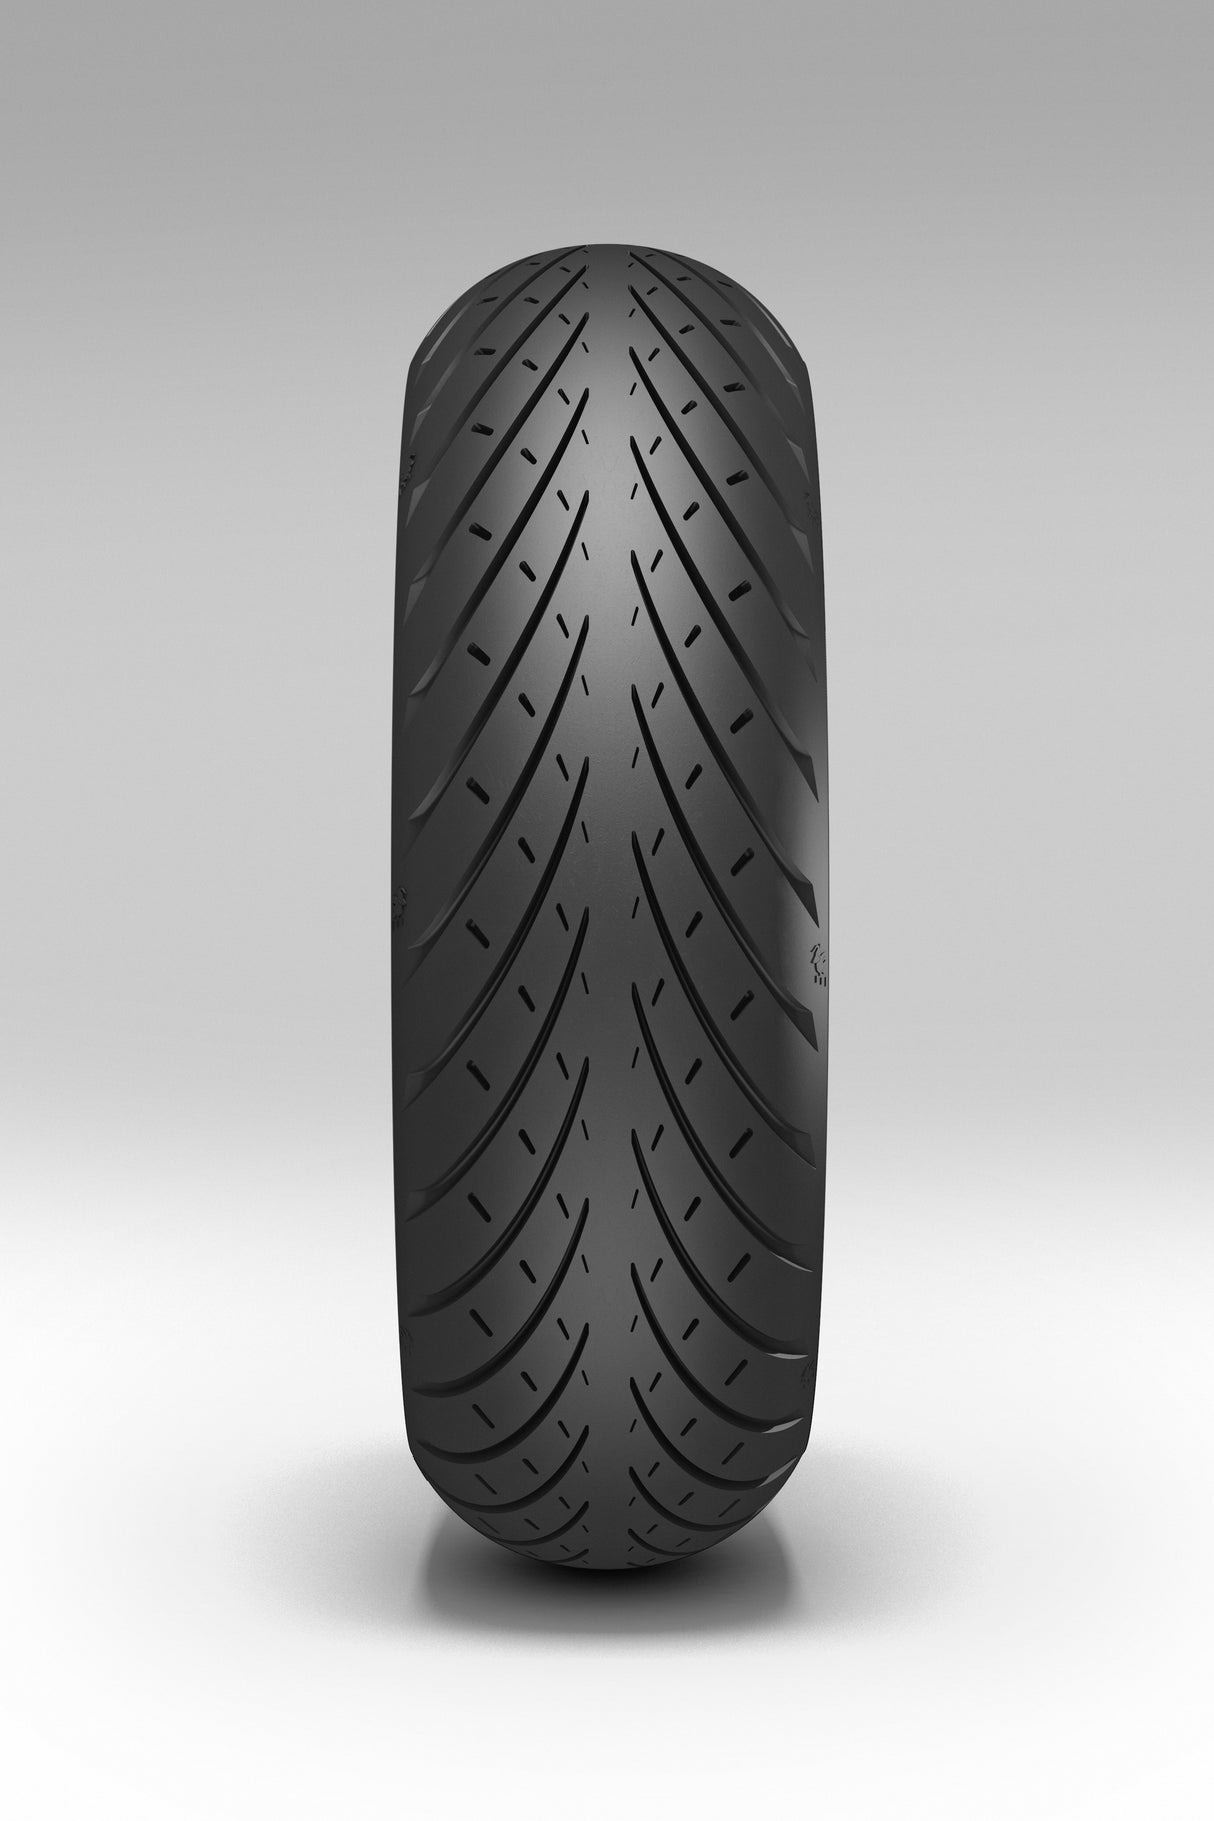 Metzeler Roadtec 01 180/55ZR17 (73W) HWM T/L Rear Tyre